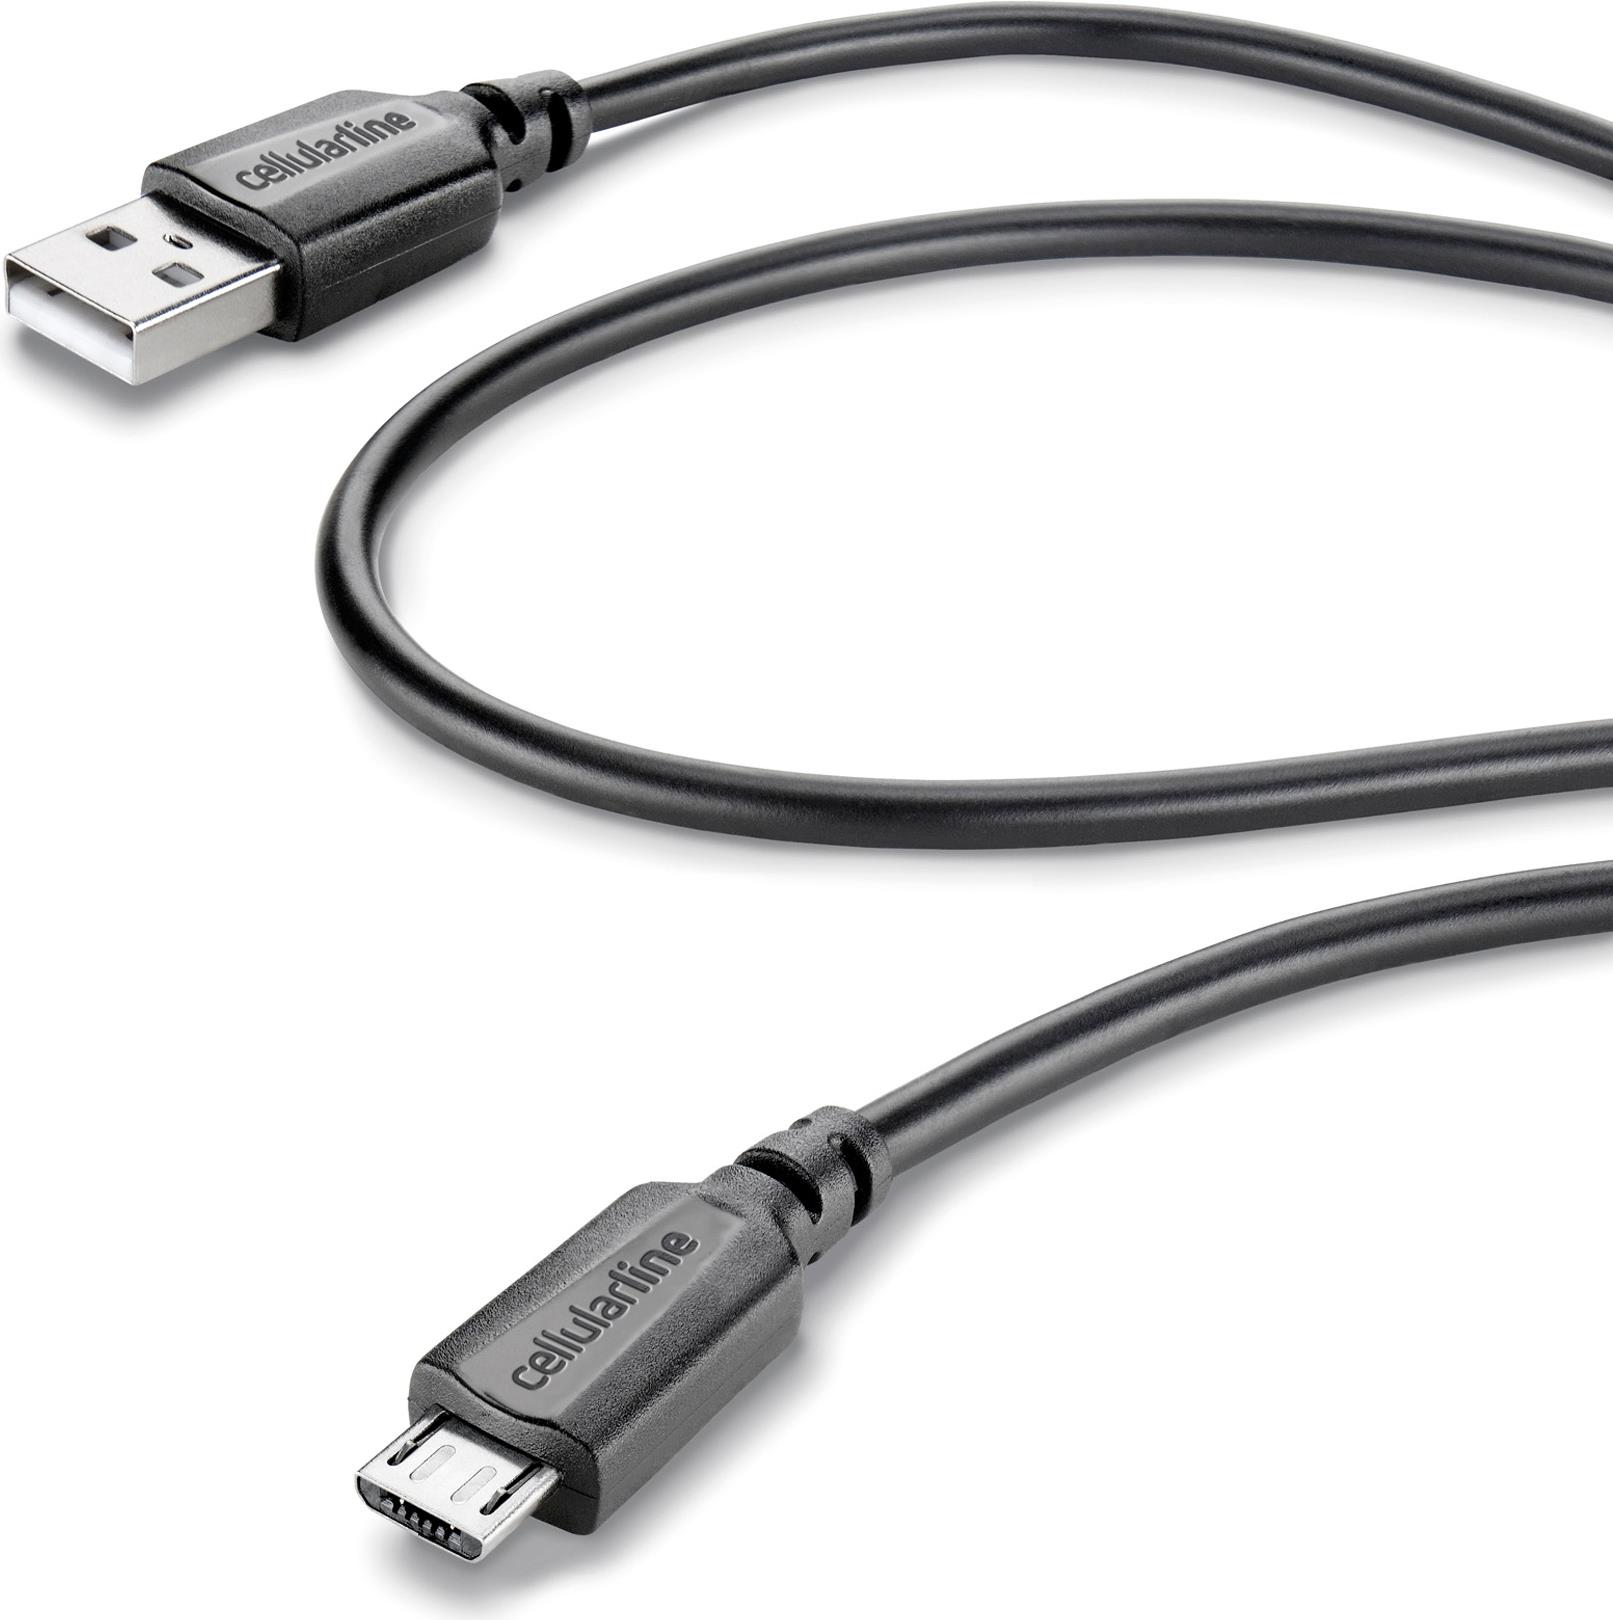 Cellularline Micro-USB - USB A 1m M/M. Kabellänge: 1,15 m, Anschluss 1: USB A, Anschluss 2: Micro-USB B, USB-Version: USB 2.0, Steckerverbindergeschlecht: Männlich/Männlich, Maximale Datenübertragungsrate: 480 Mbit/s, Produktfarbe: Schwarz (60333)